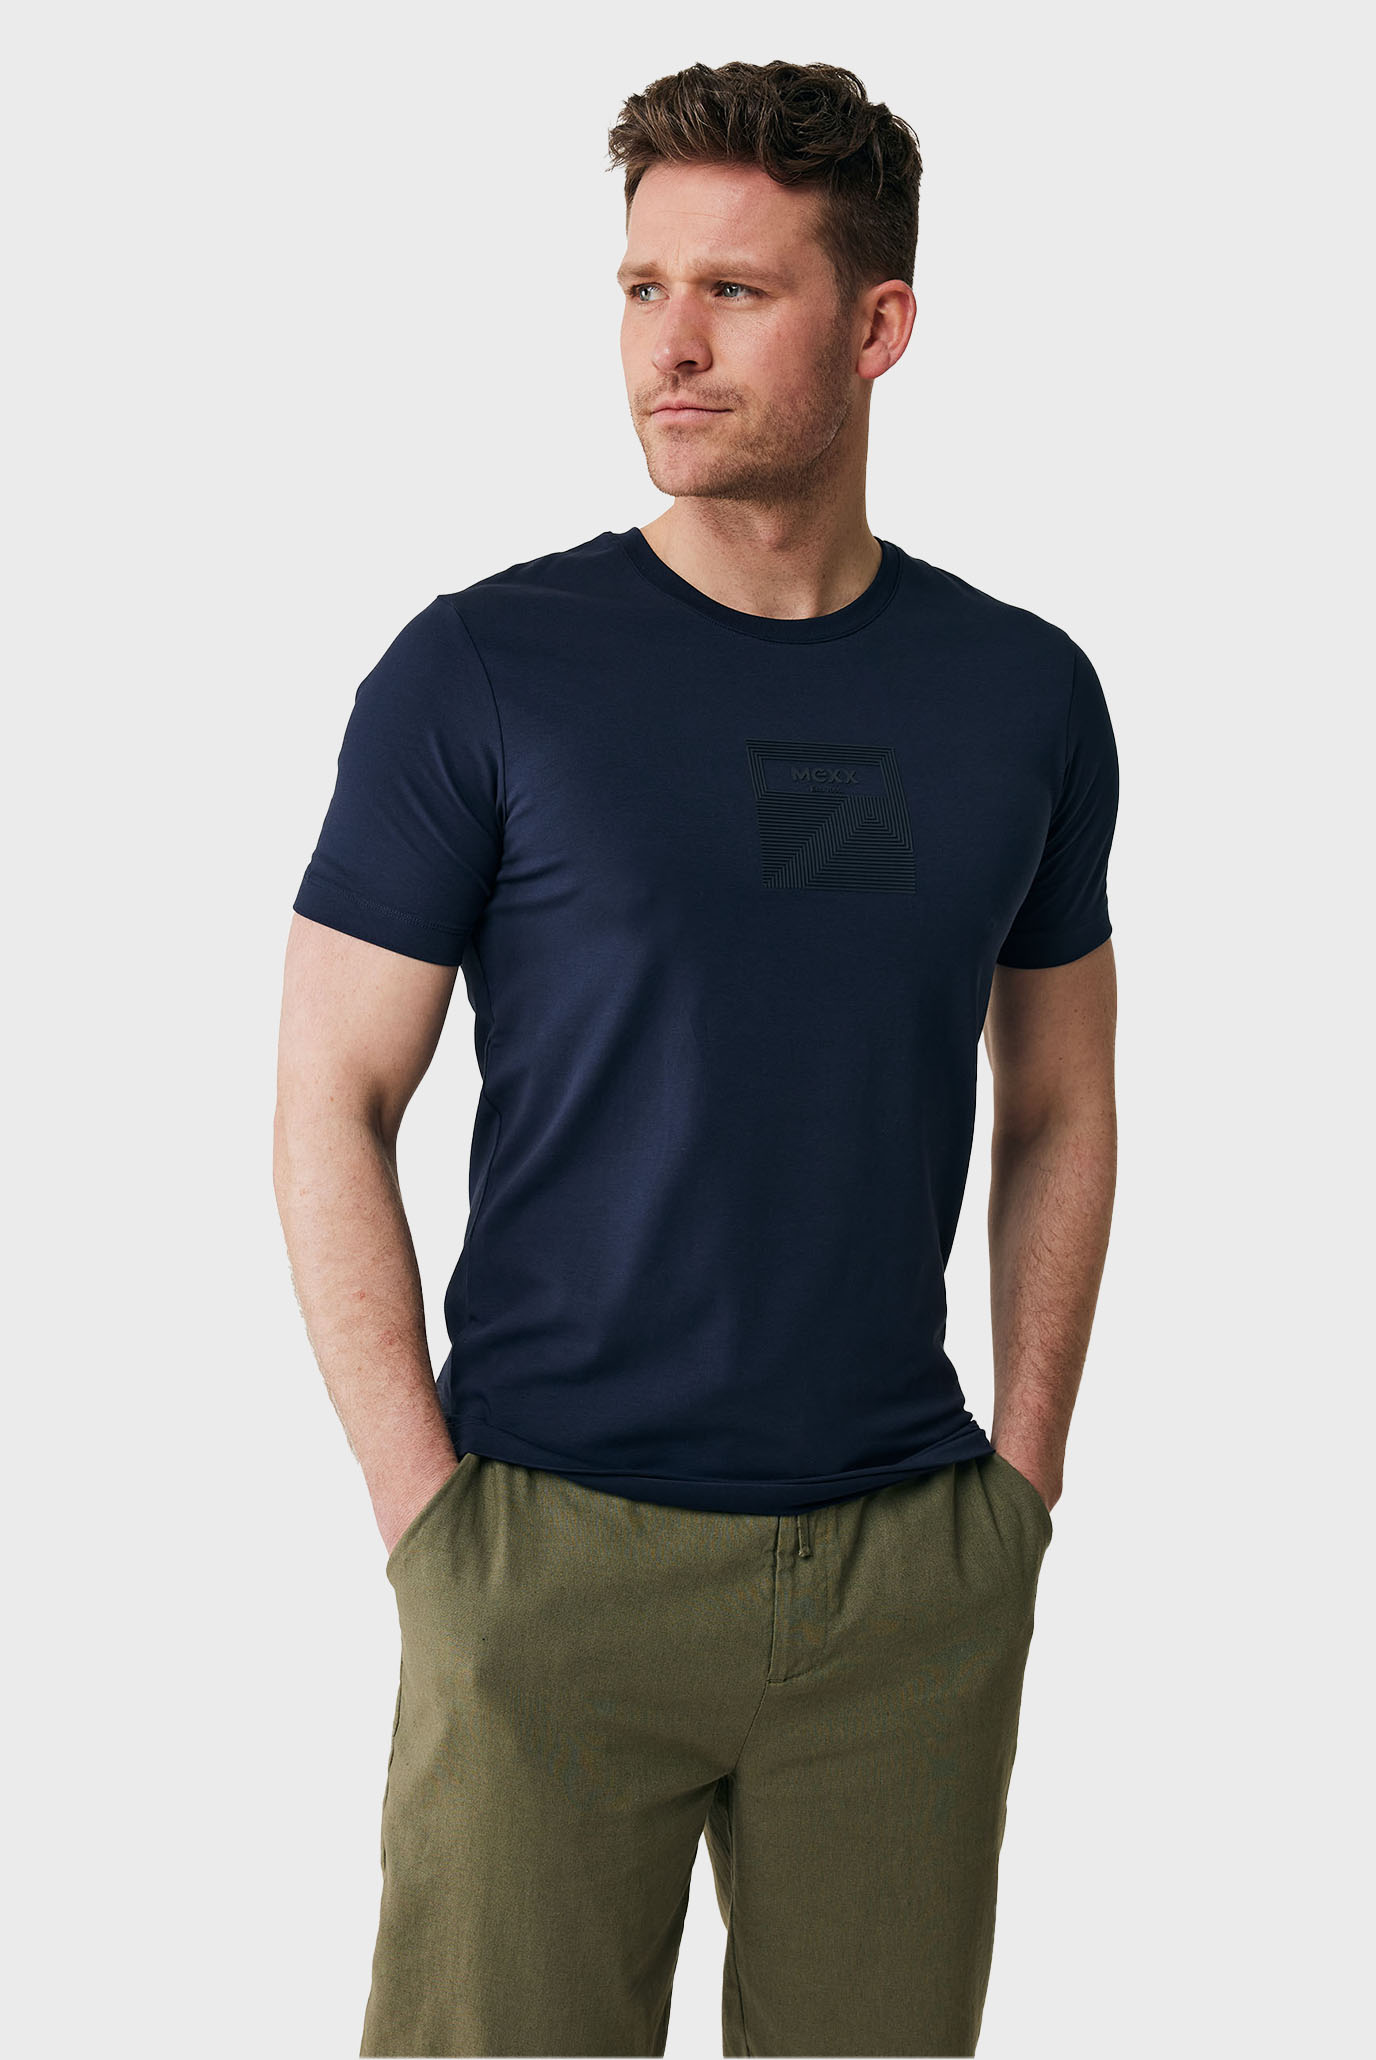 Мужская темно-синяя футболка 1